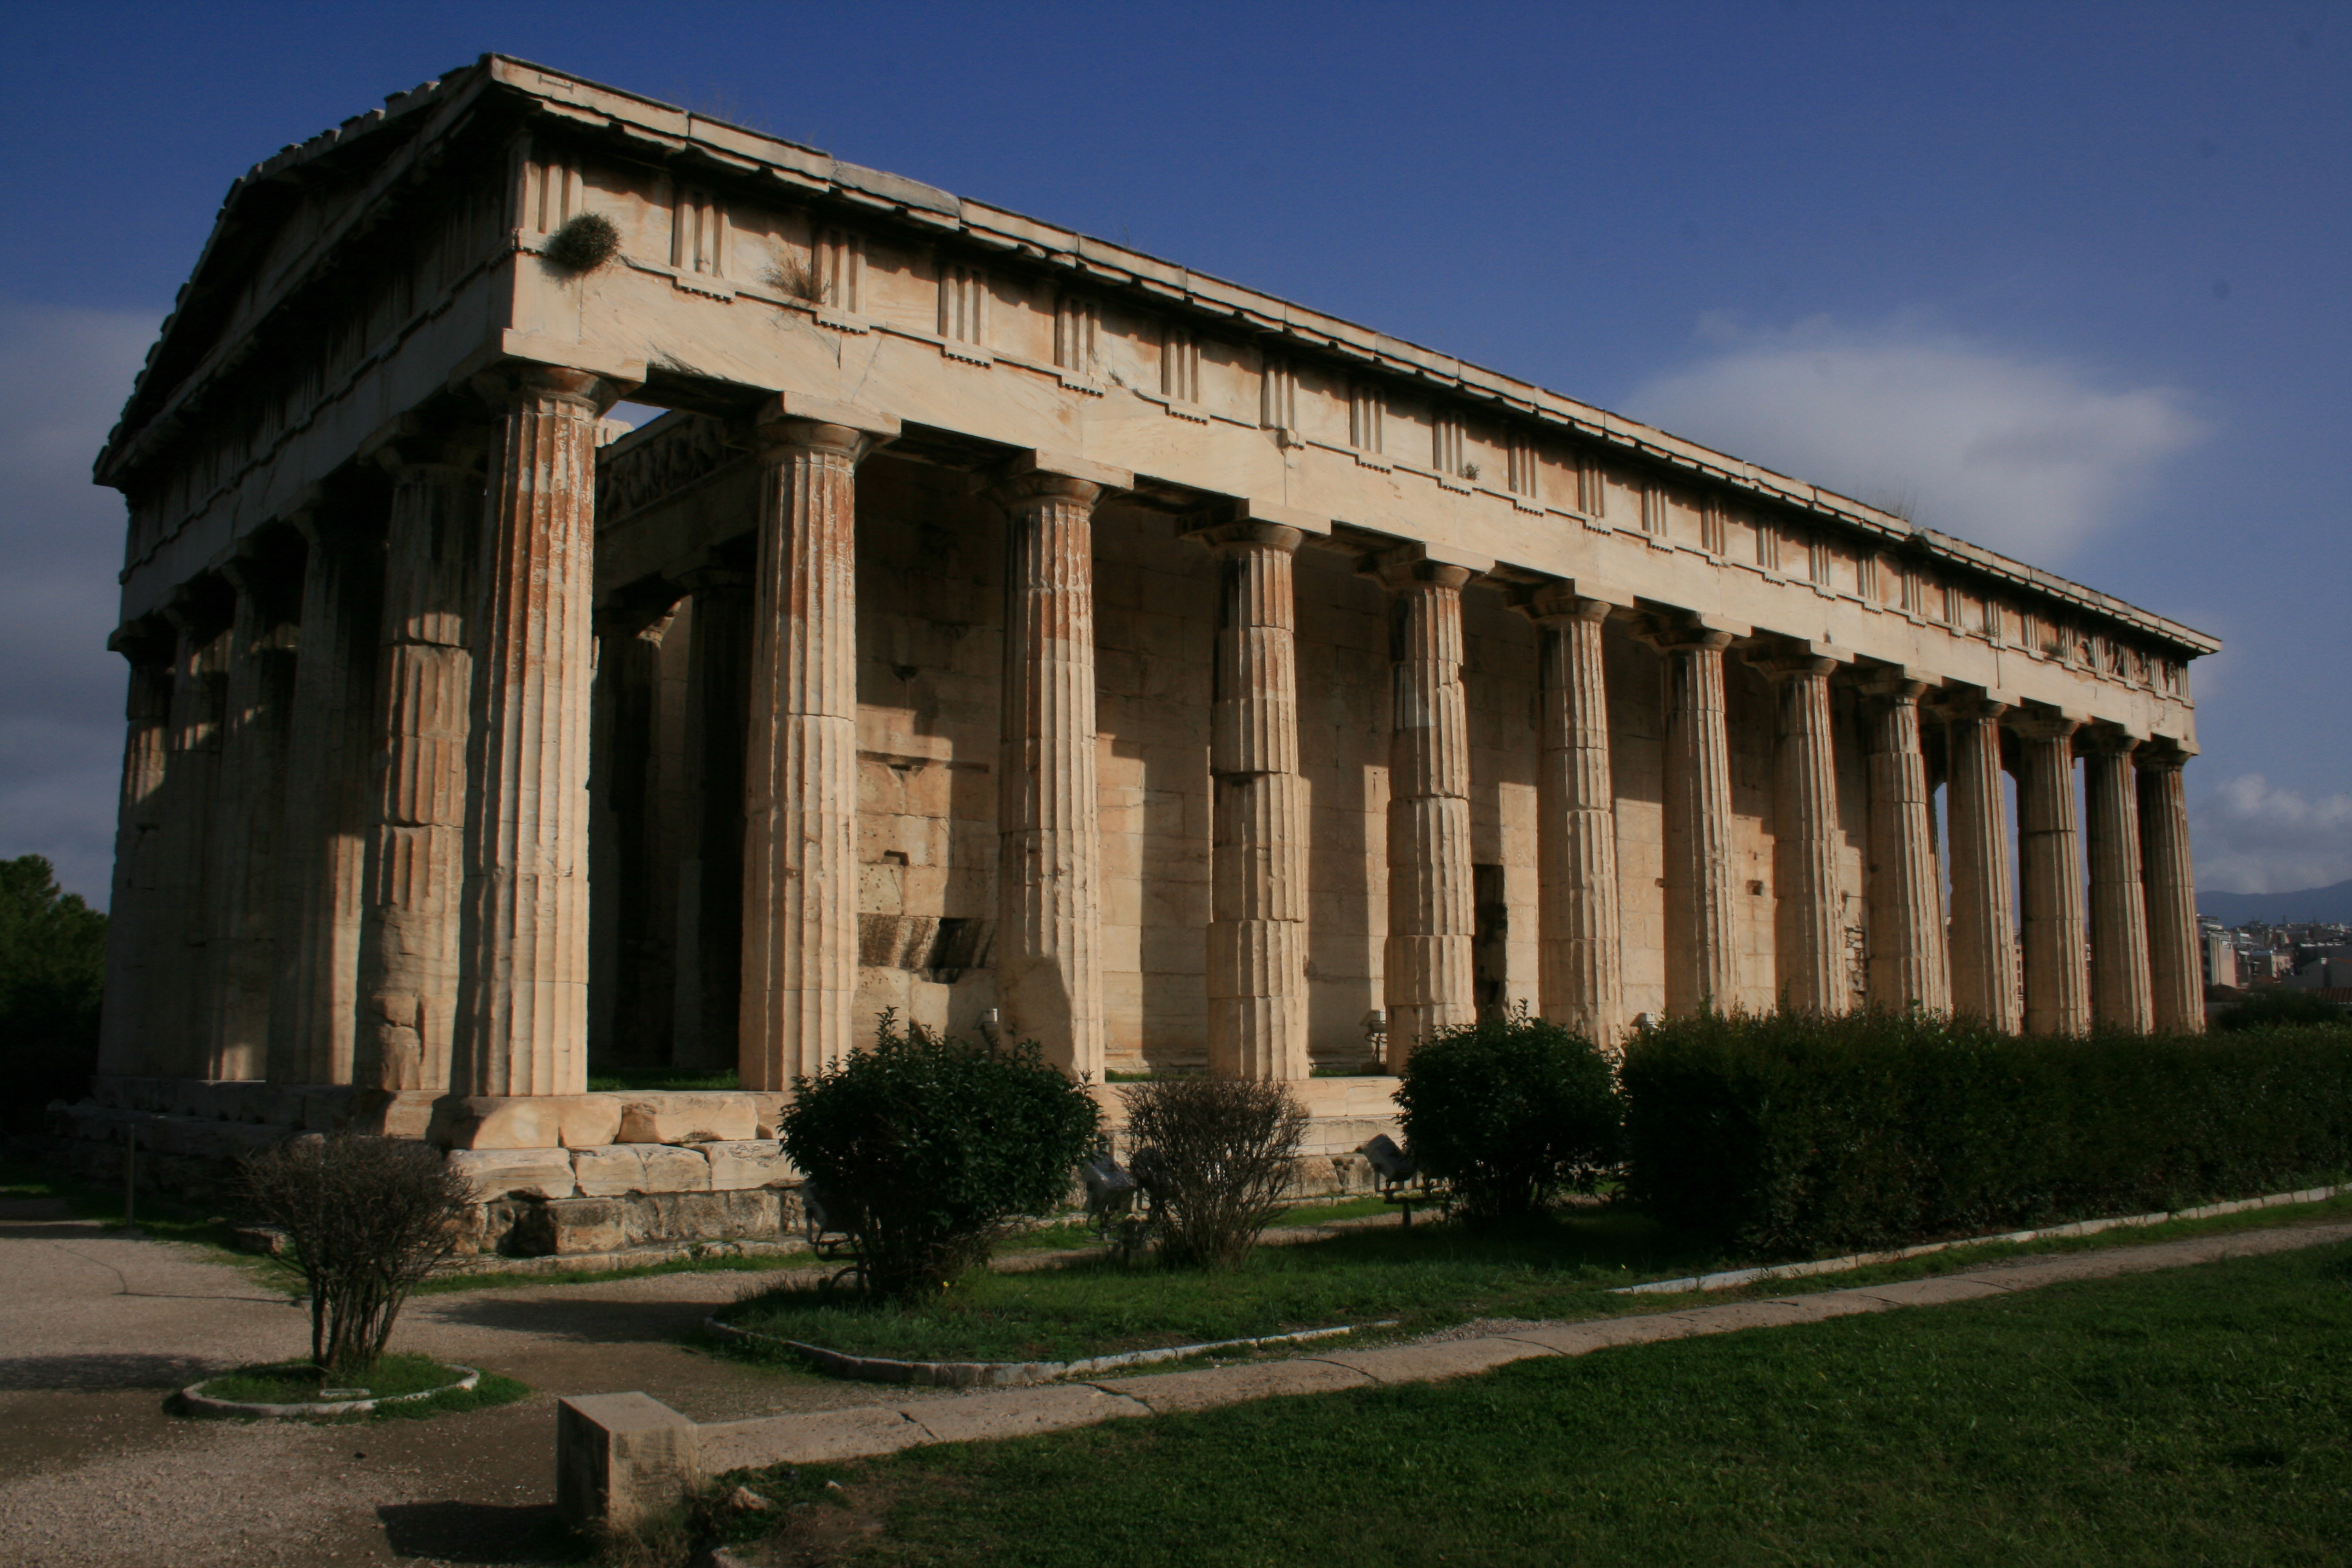 theseion temple de l'agora d'athenes grece